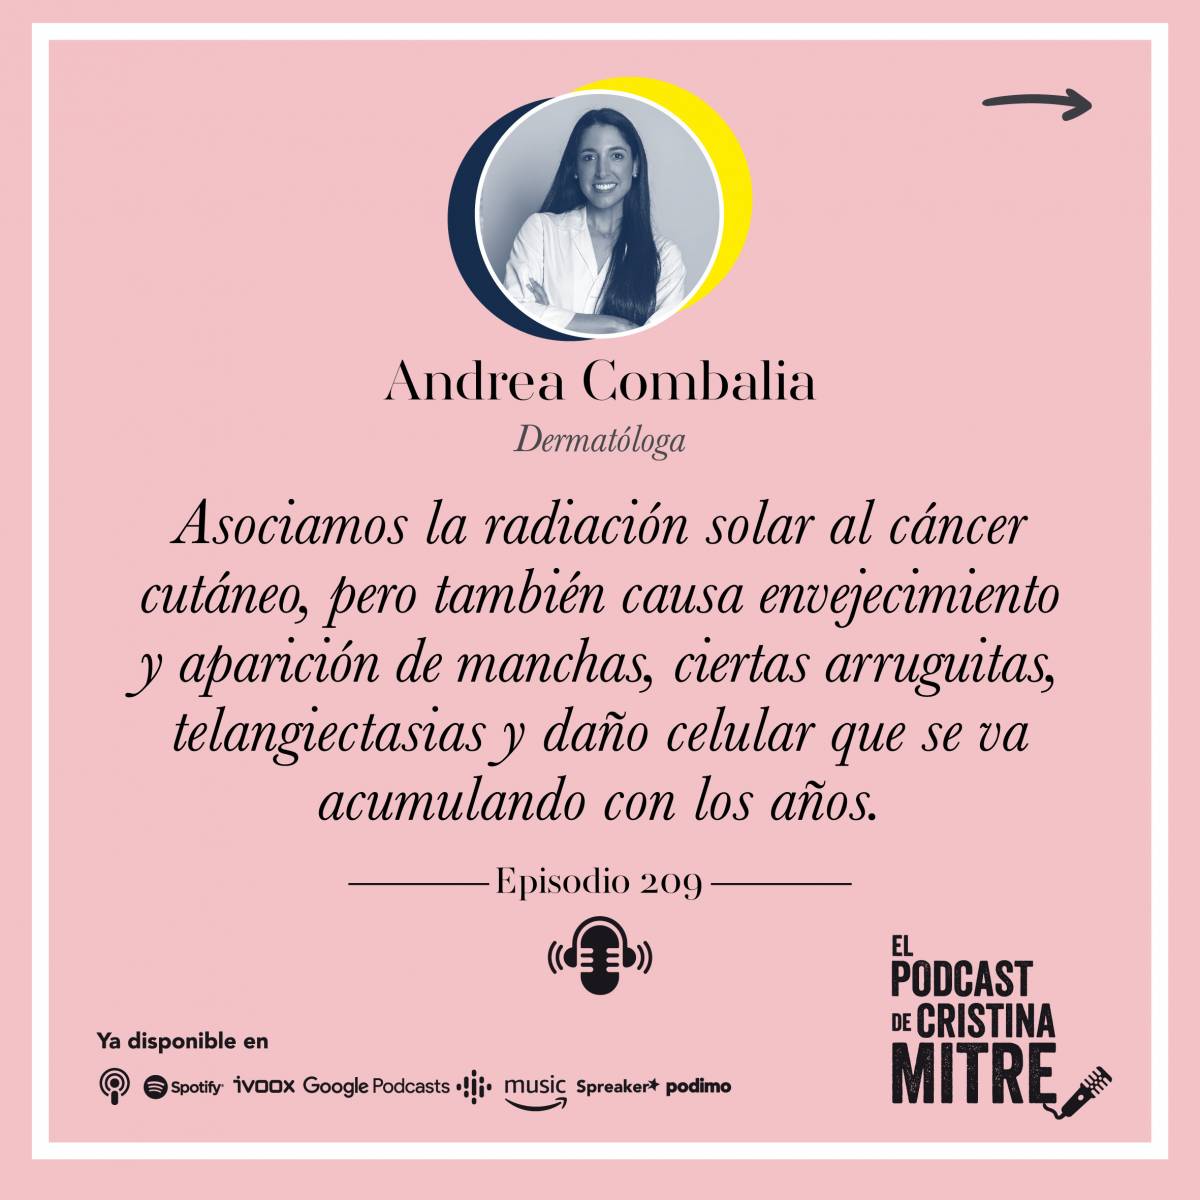 El podcast de Cristina Mitre Andrea Combalia Proteccion solar